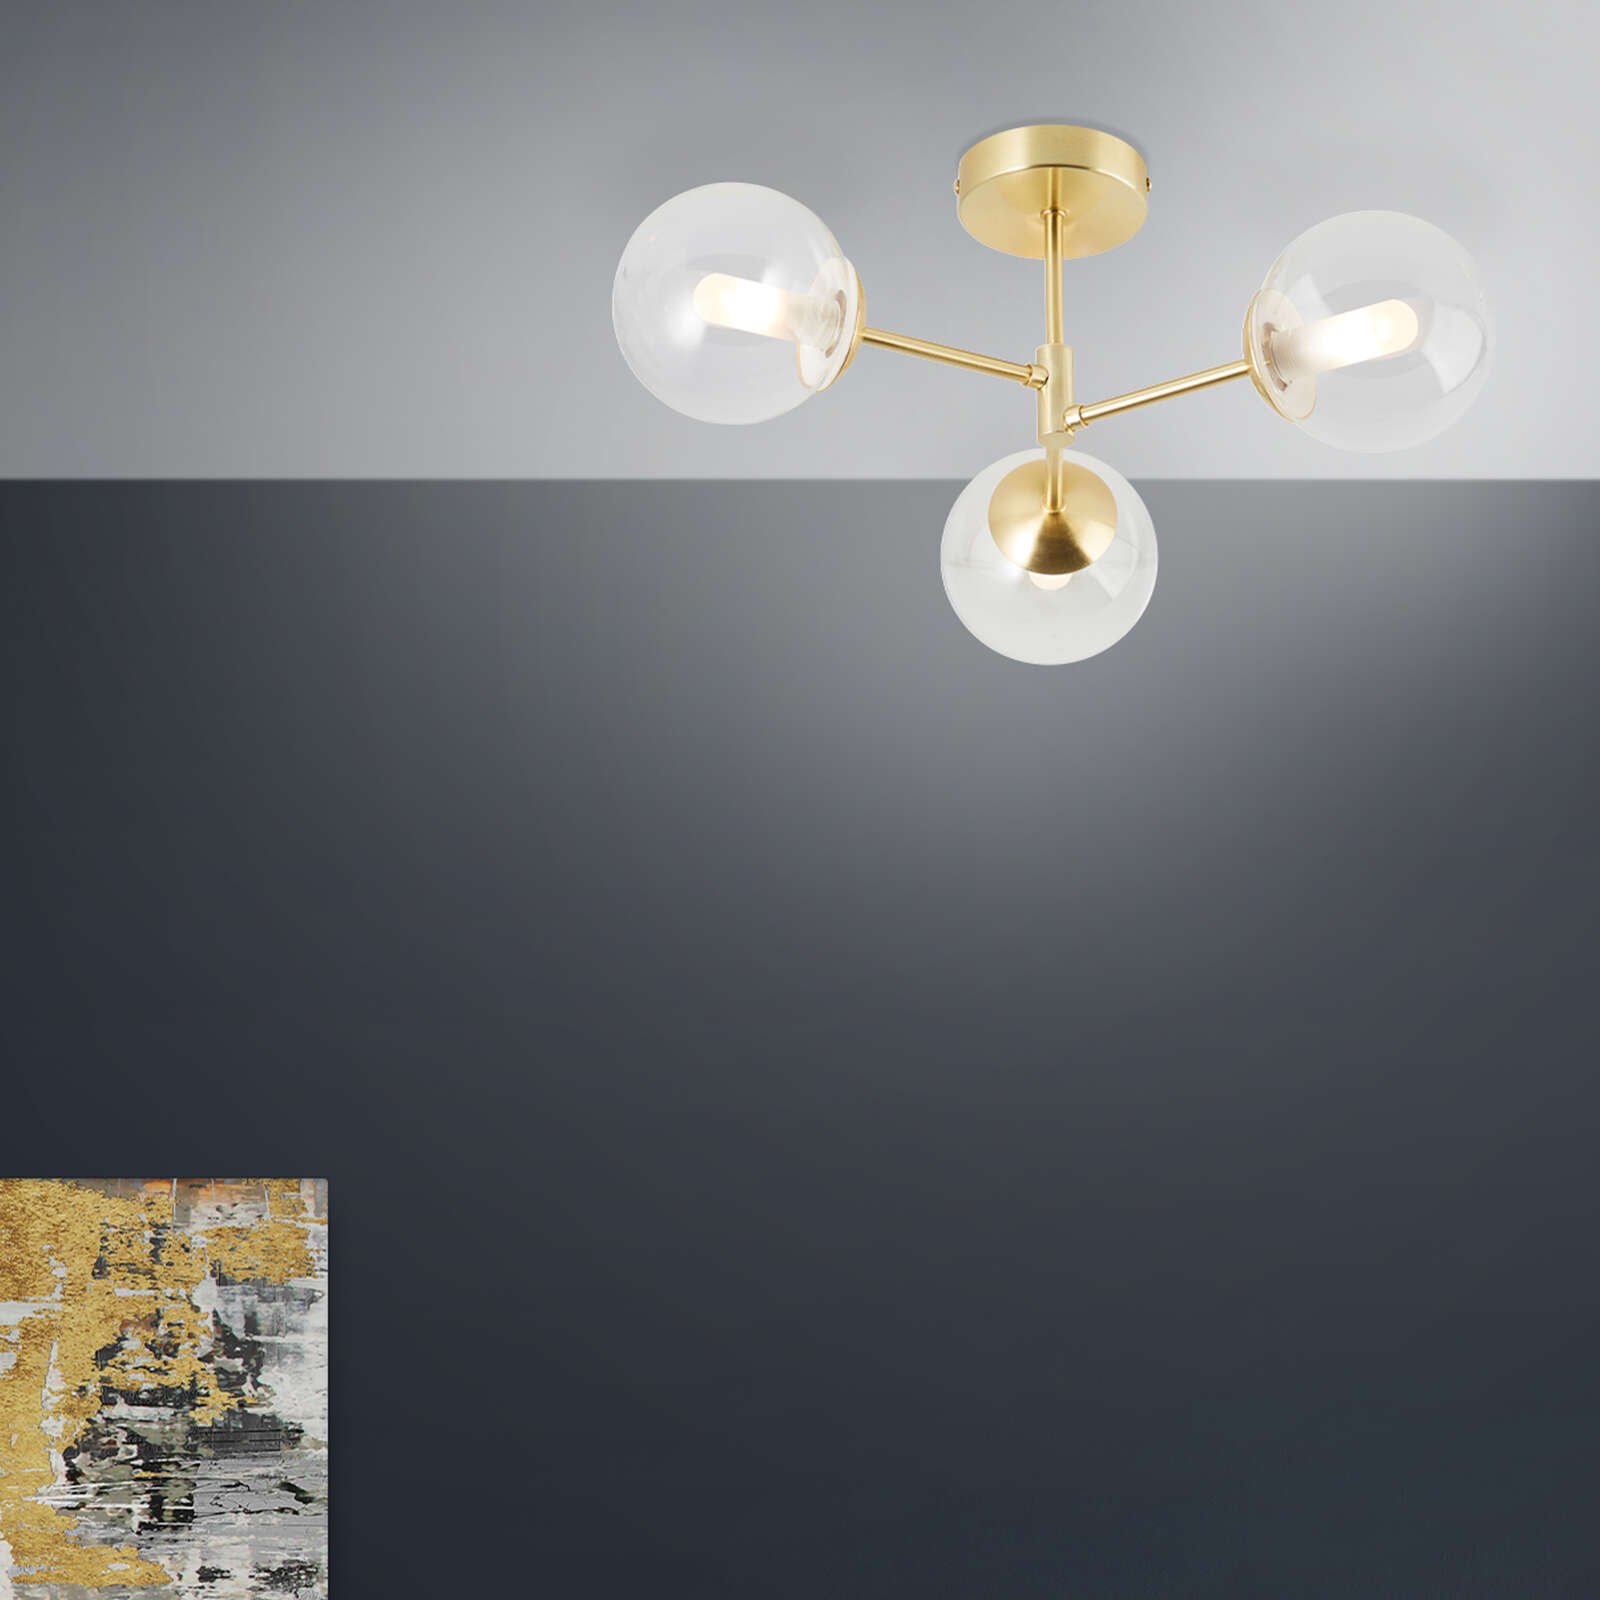             Glass ceiling light - Henri 1 - Gold
        